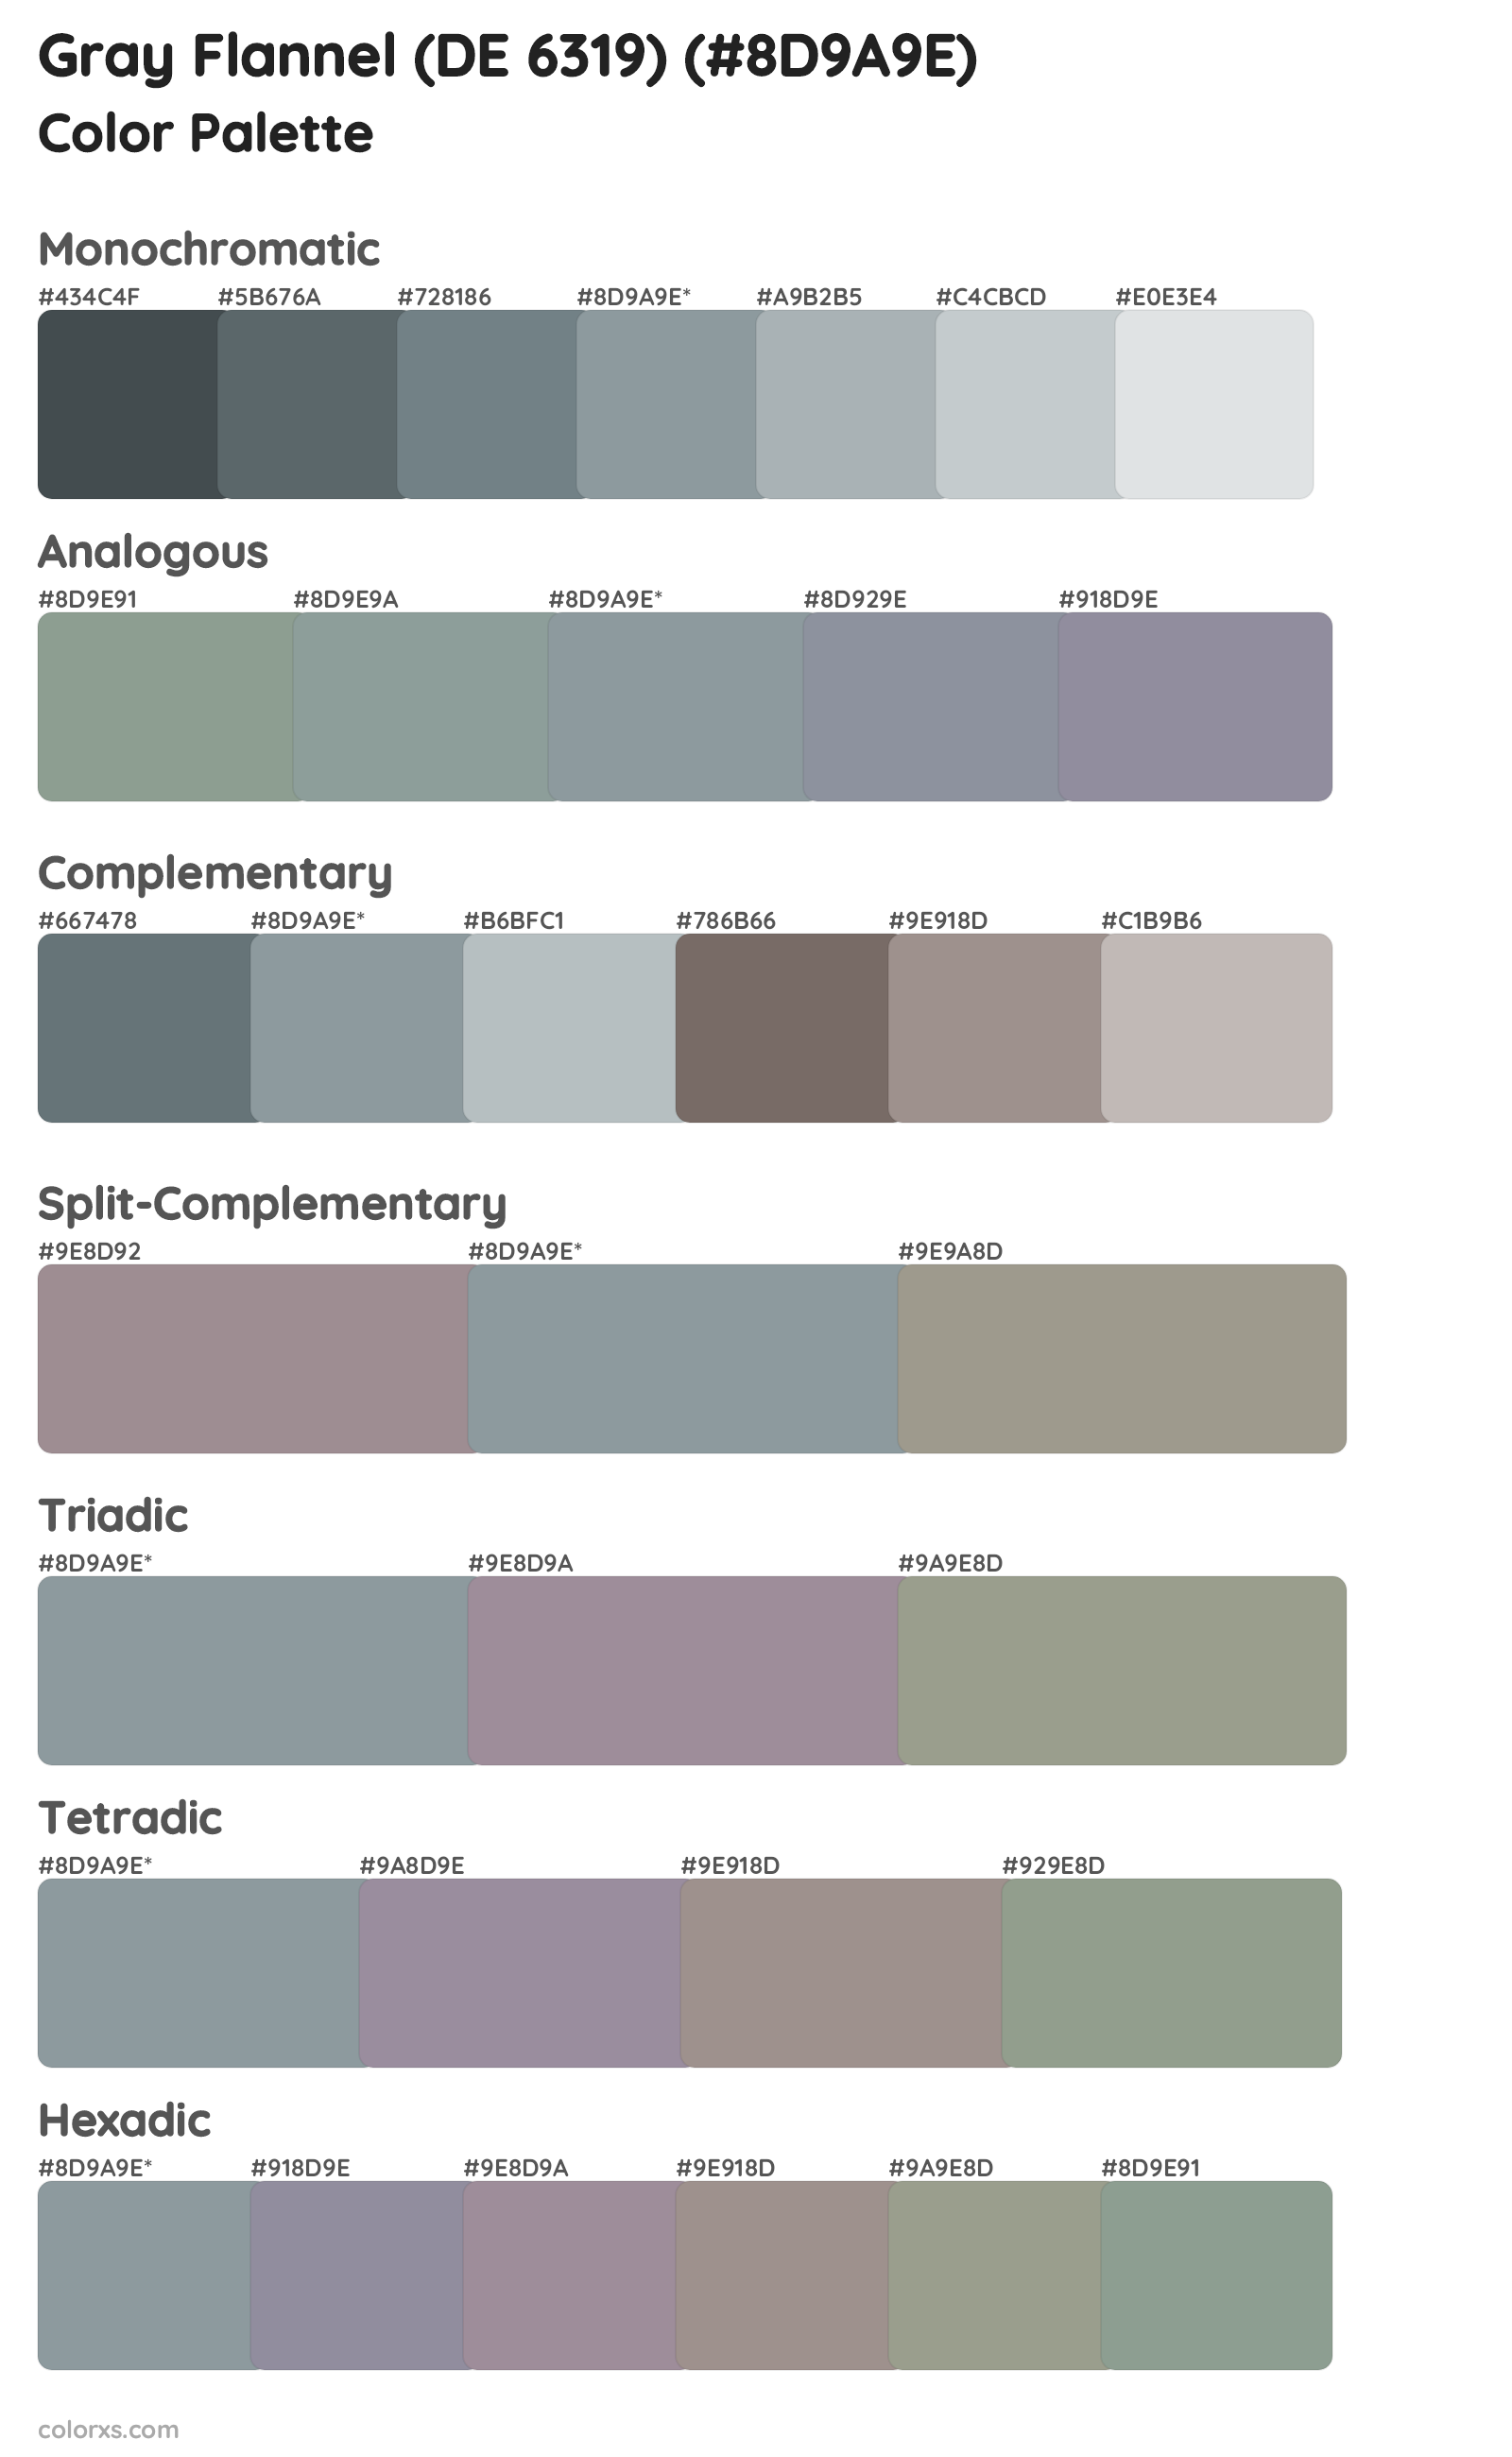 Gray Flannel (DE 6319) Color Scheme Palettes